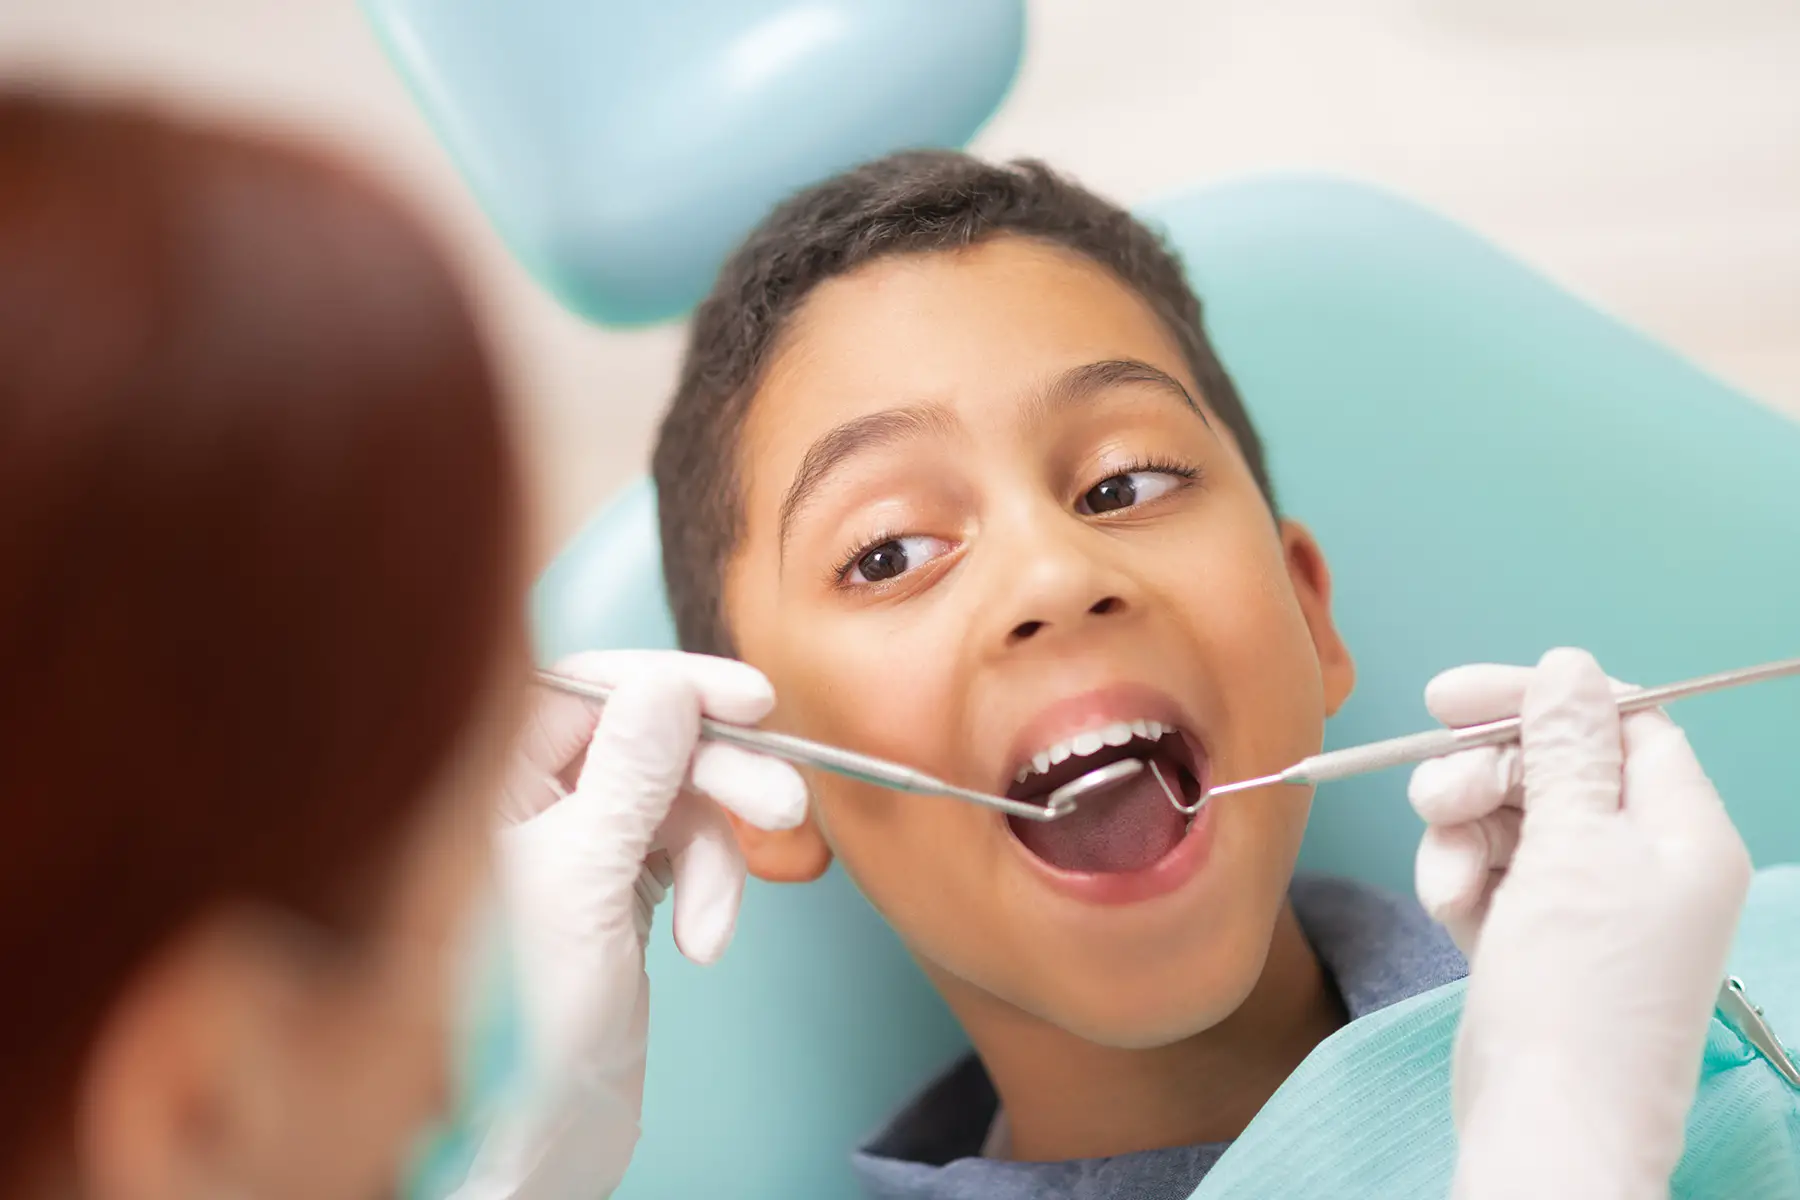 Young boy at a dental checkup